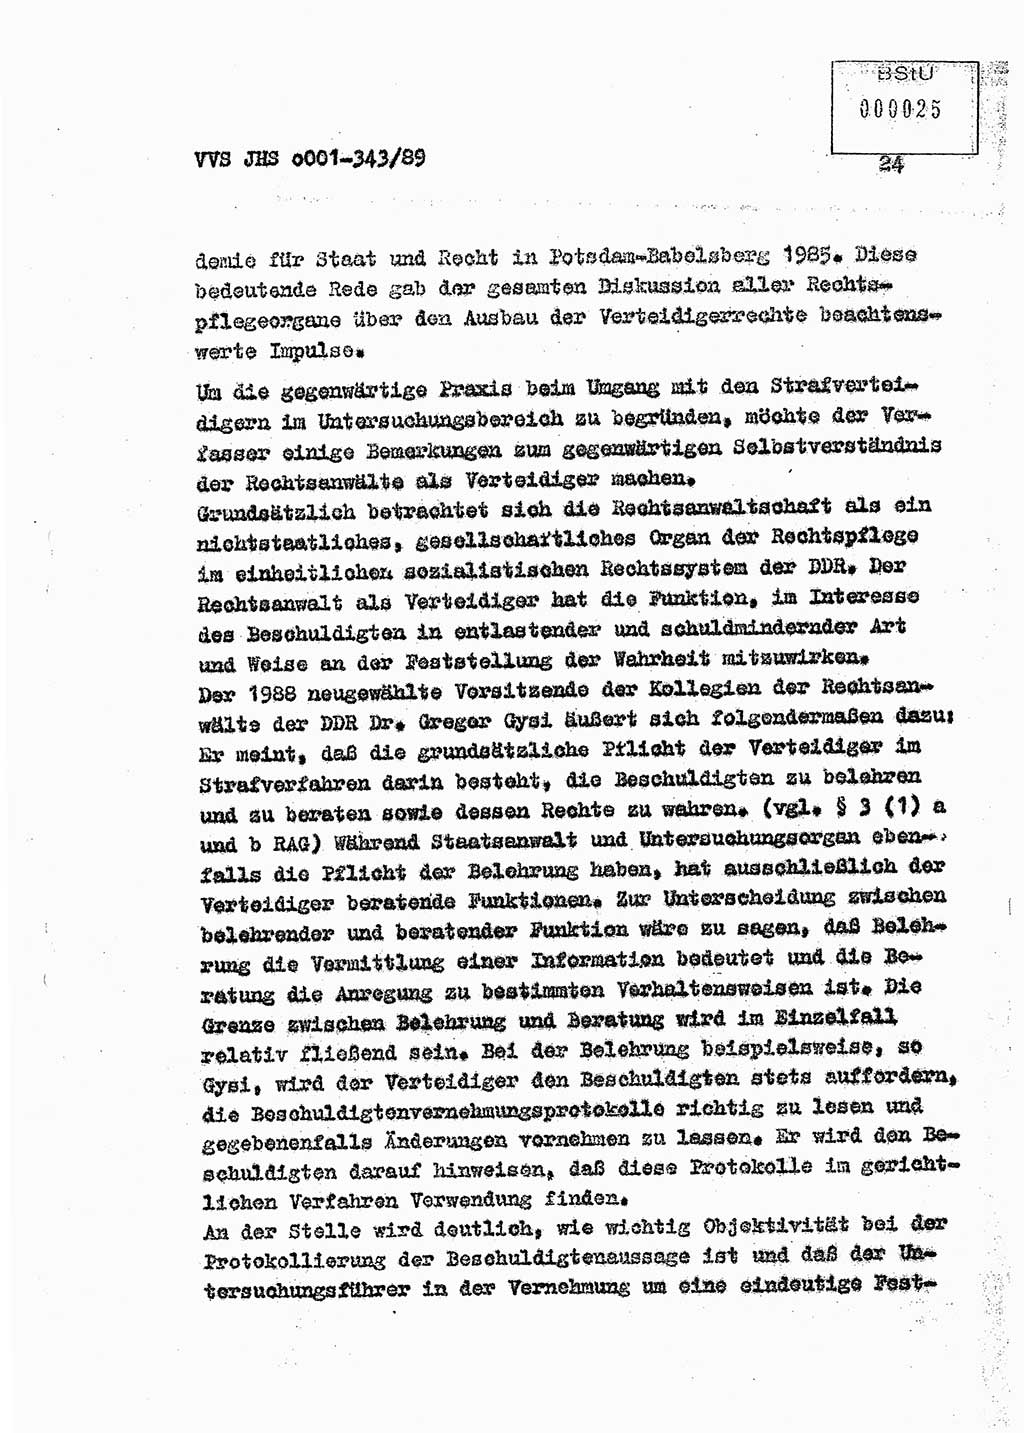 Diplomarbeit Offiziersschüler Axel Henschke (HA Ⅸ/9), Ministerium für Staatssicherheit (MfS) [Deutsche Demokratische Republik (DDR)], Juristische Hochschule (JHS), Vertrauliche Verschlußsache (VVS) o001-343/89, Potsdam 1989, Seite 24 (Dipl.-Arb. MfS DDR JHS VVS o001-343/89 1989, S. 24)